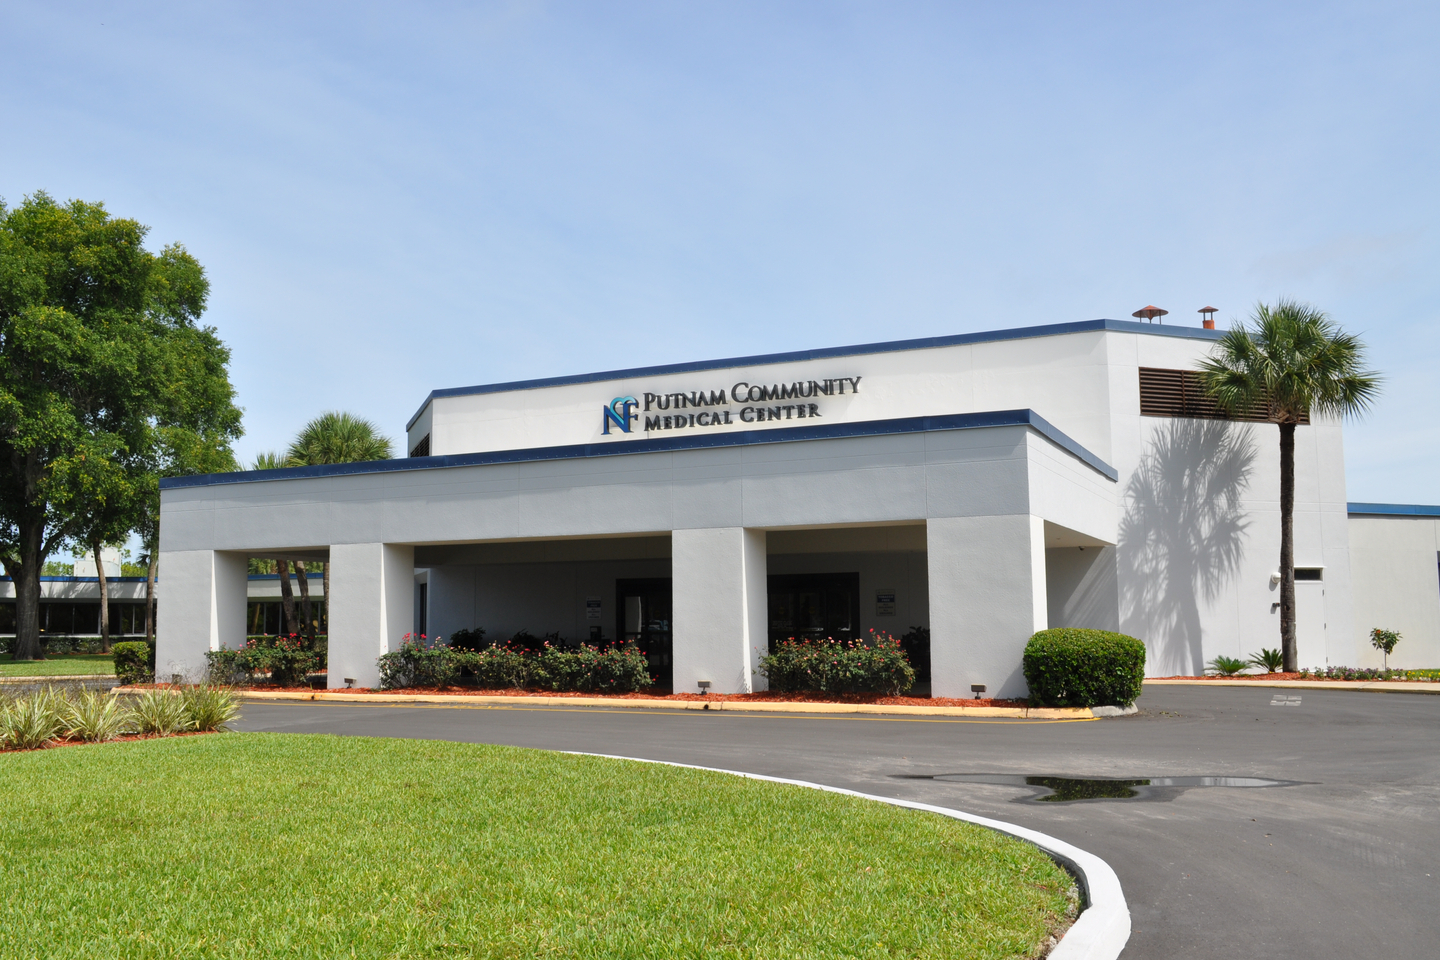 Exterior view of HCA Florida Putnam Hospital